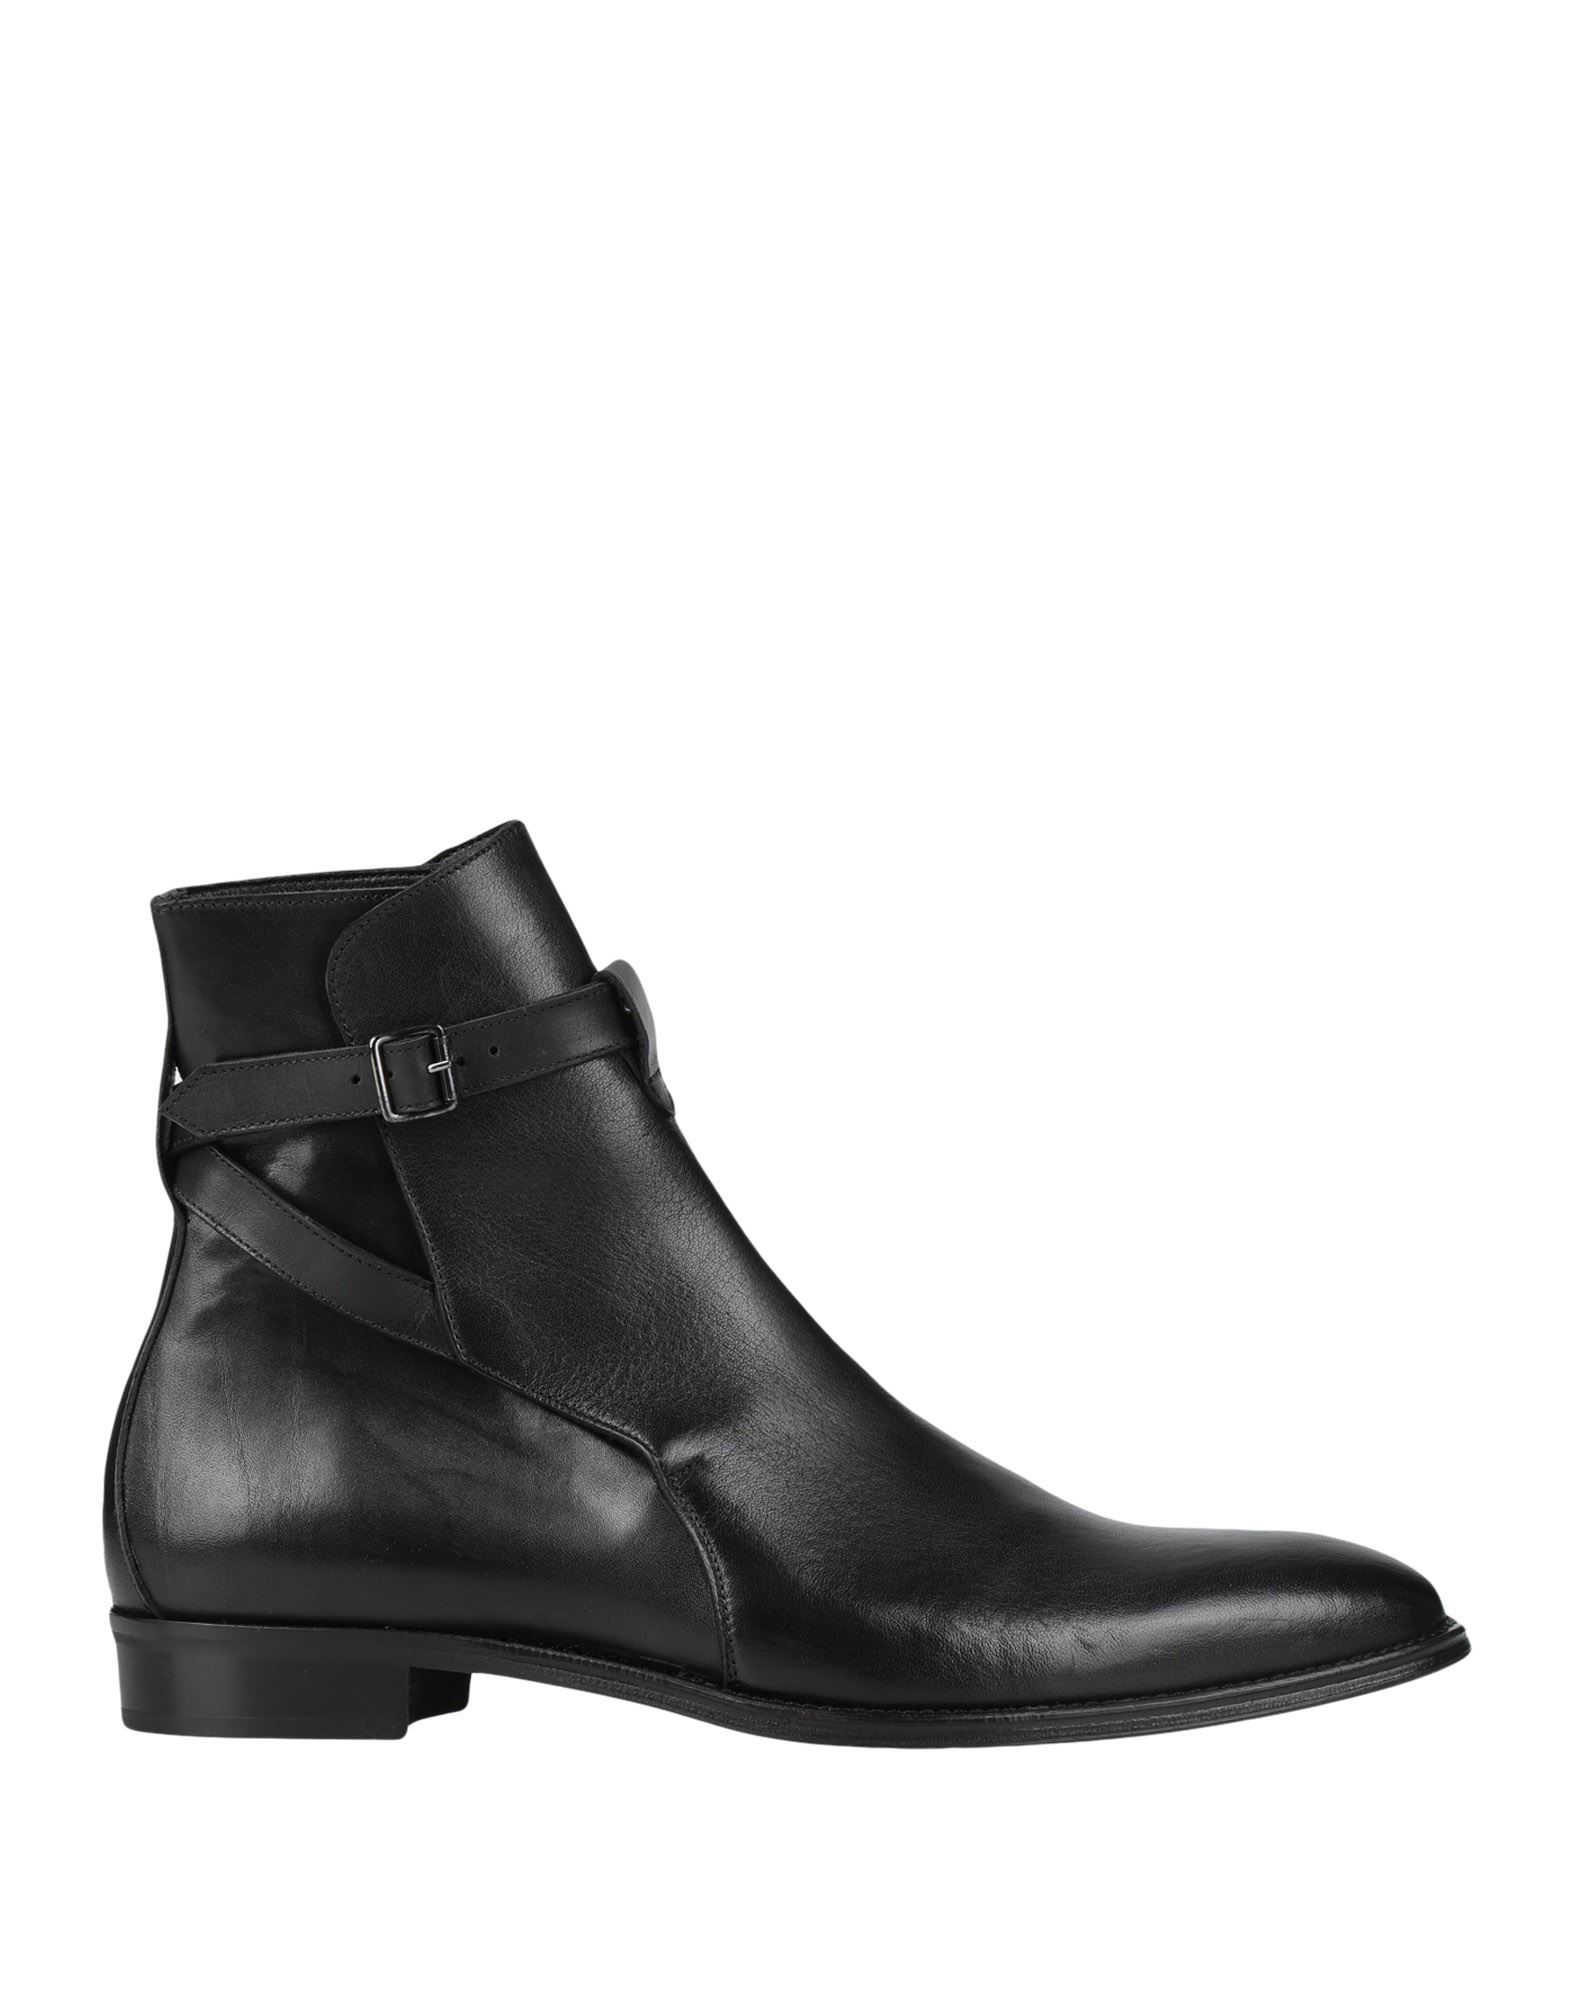 Artigiani Aurelio Giocondi Ankle Boots In Black